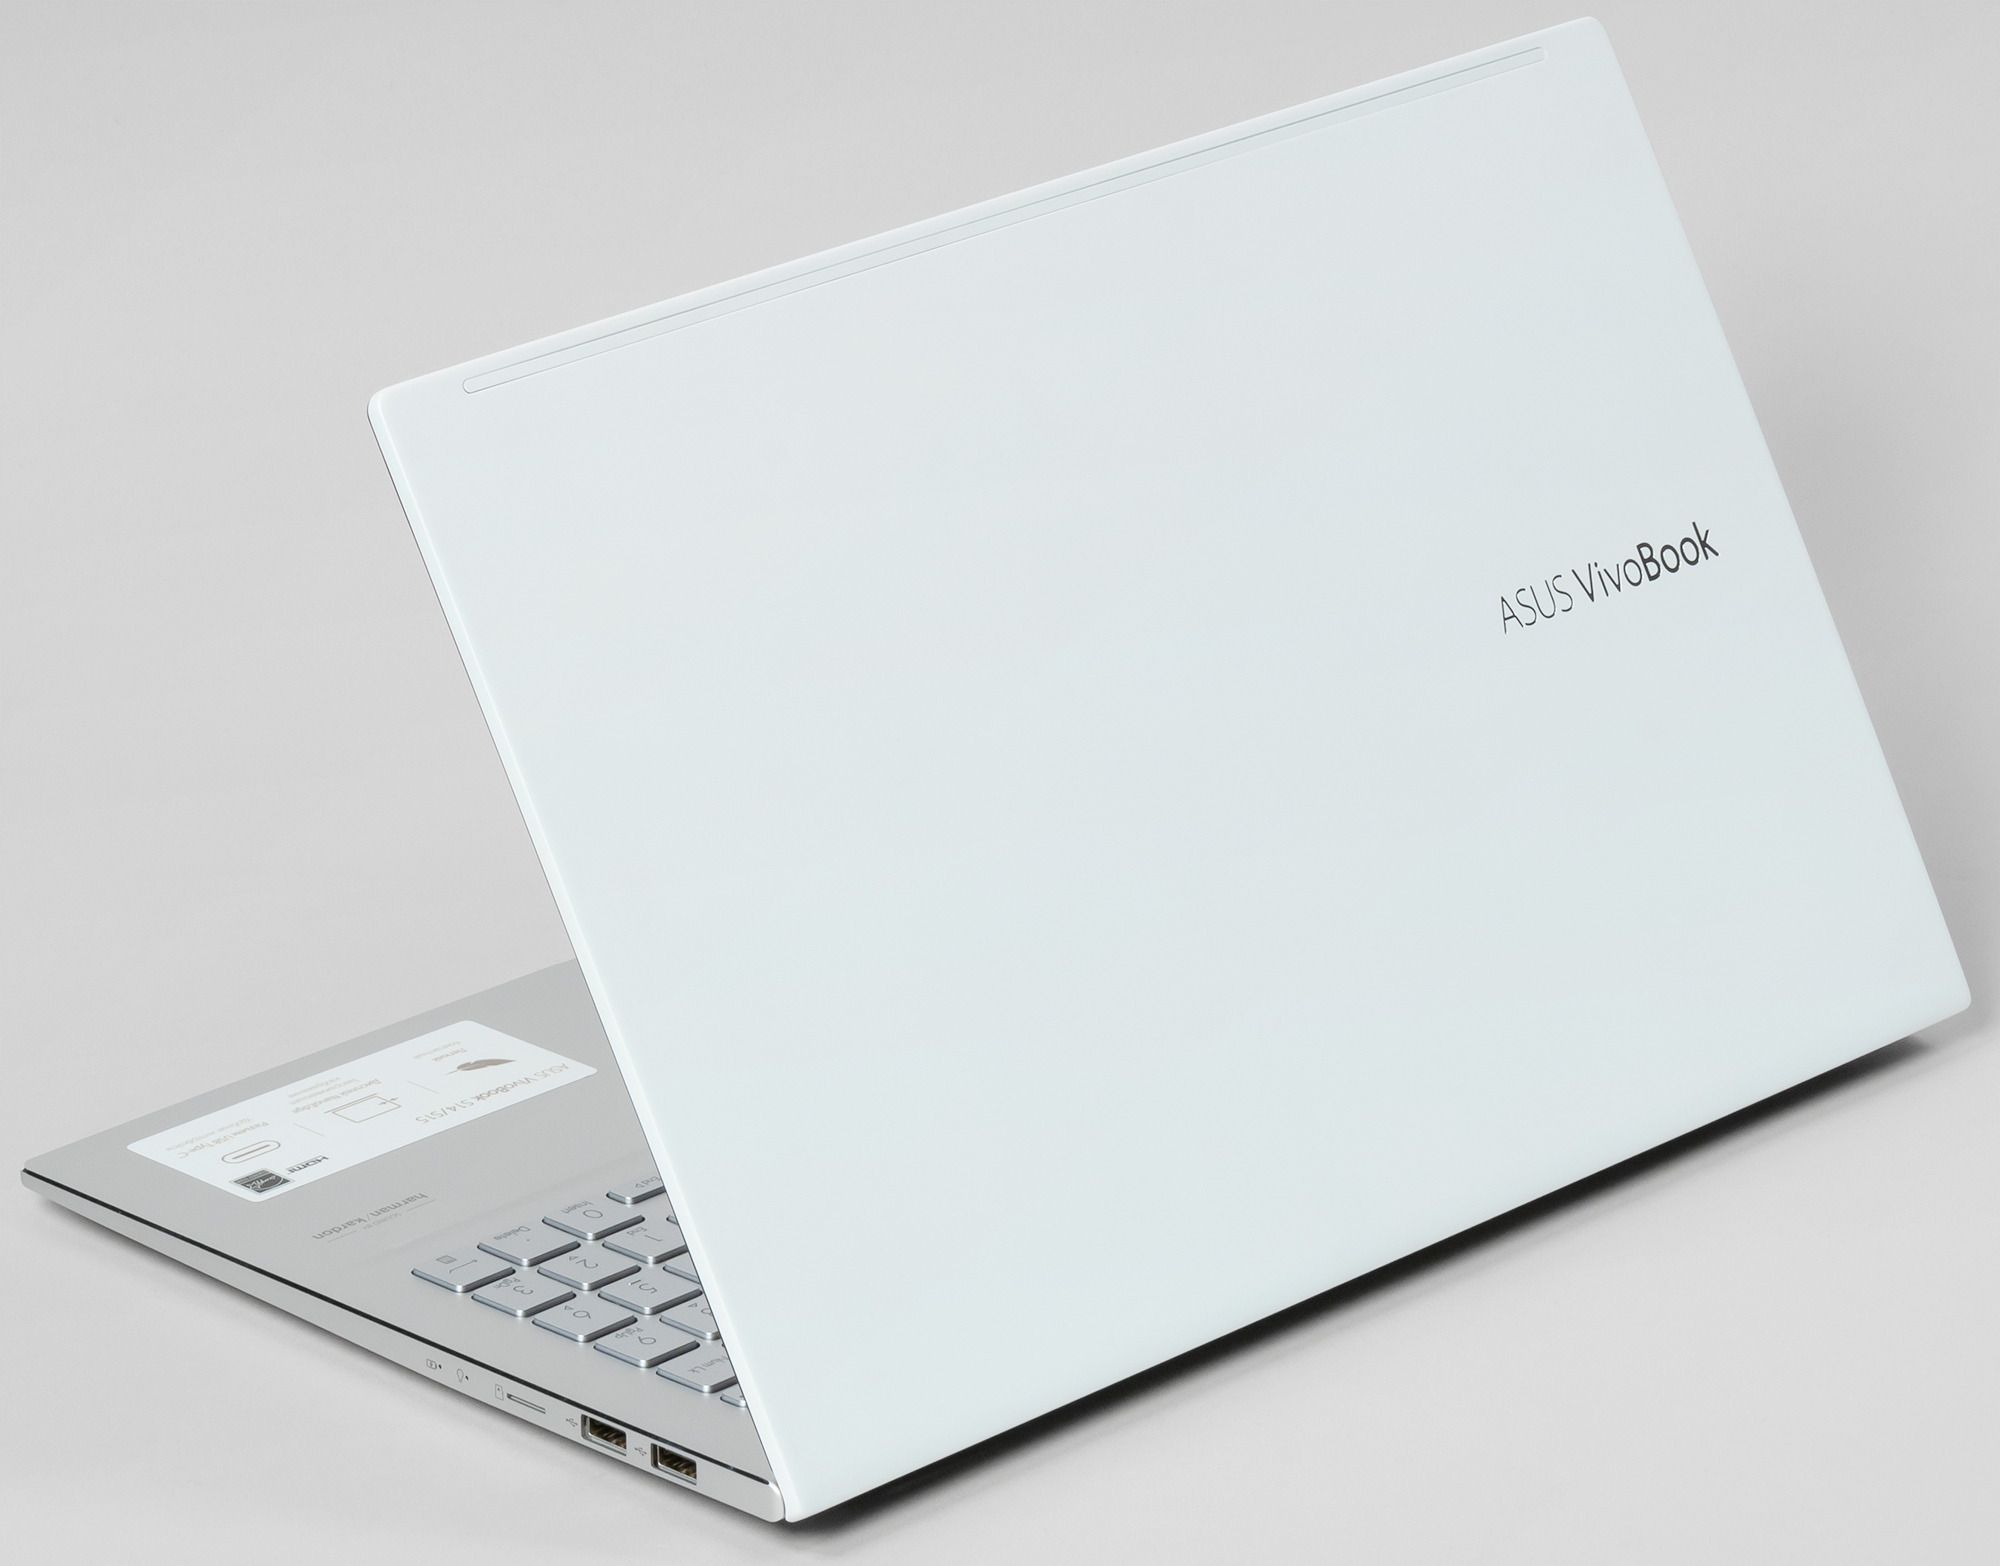 Ноутбук Asus Vivobook S15 Купить